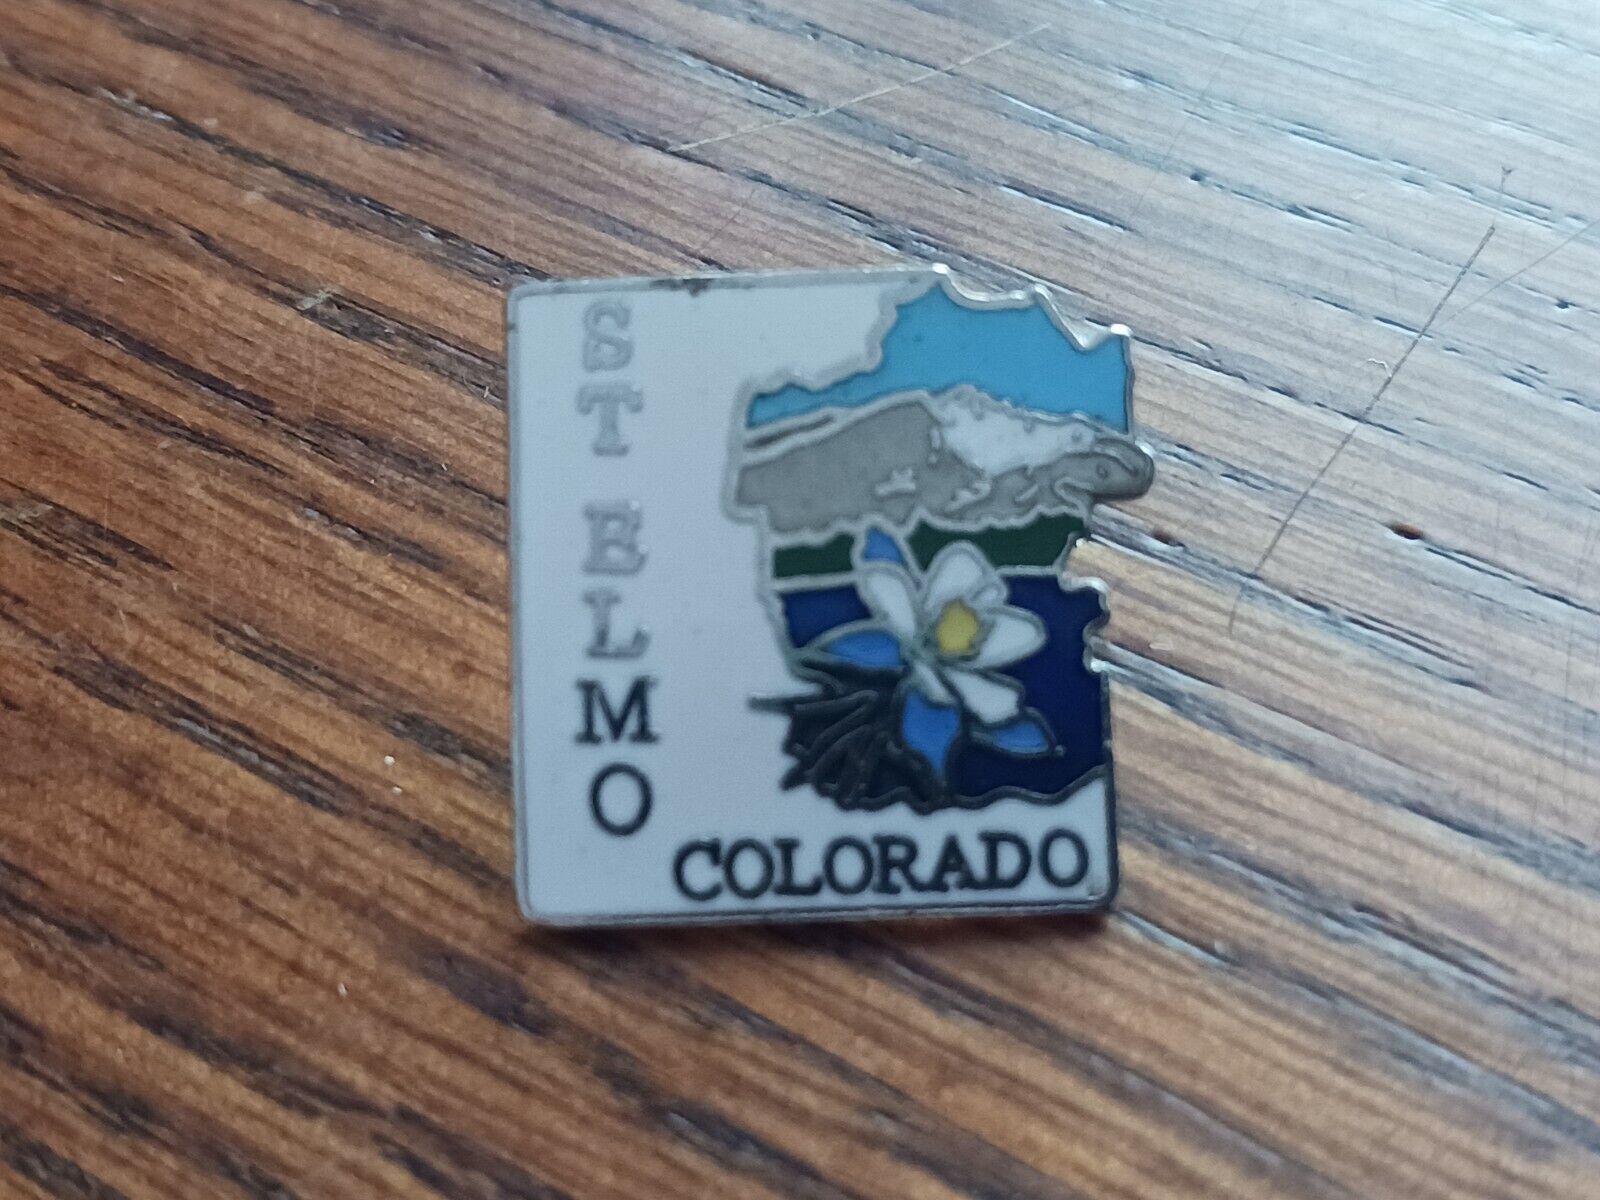 St. Elmo Colorado Pin Button Tourist Collectible Souvenir